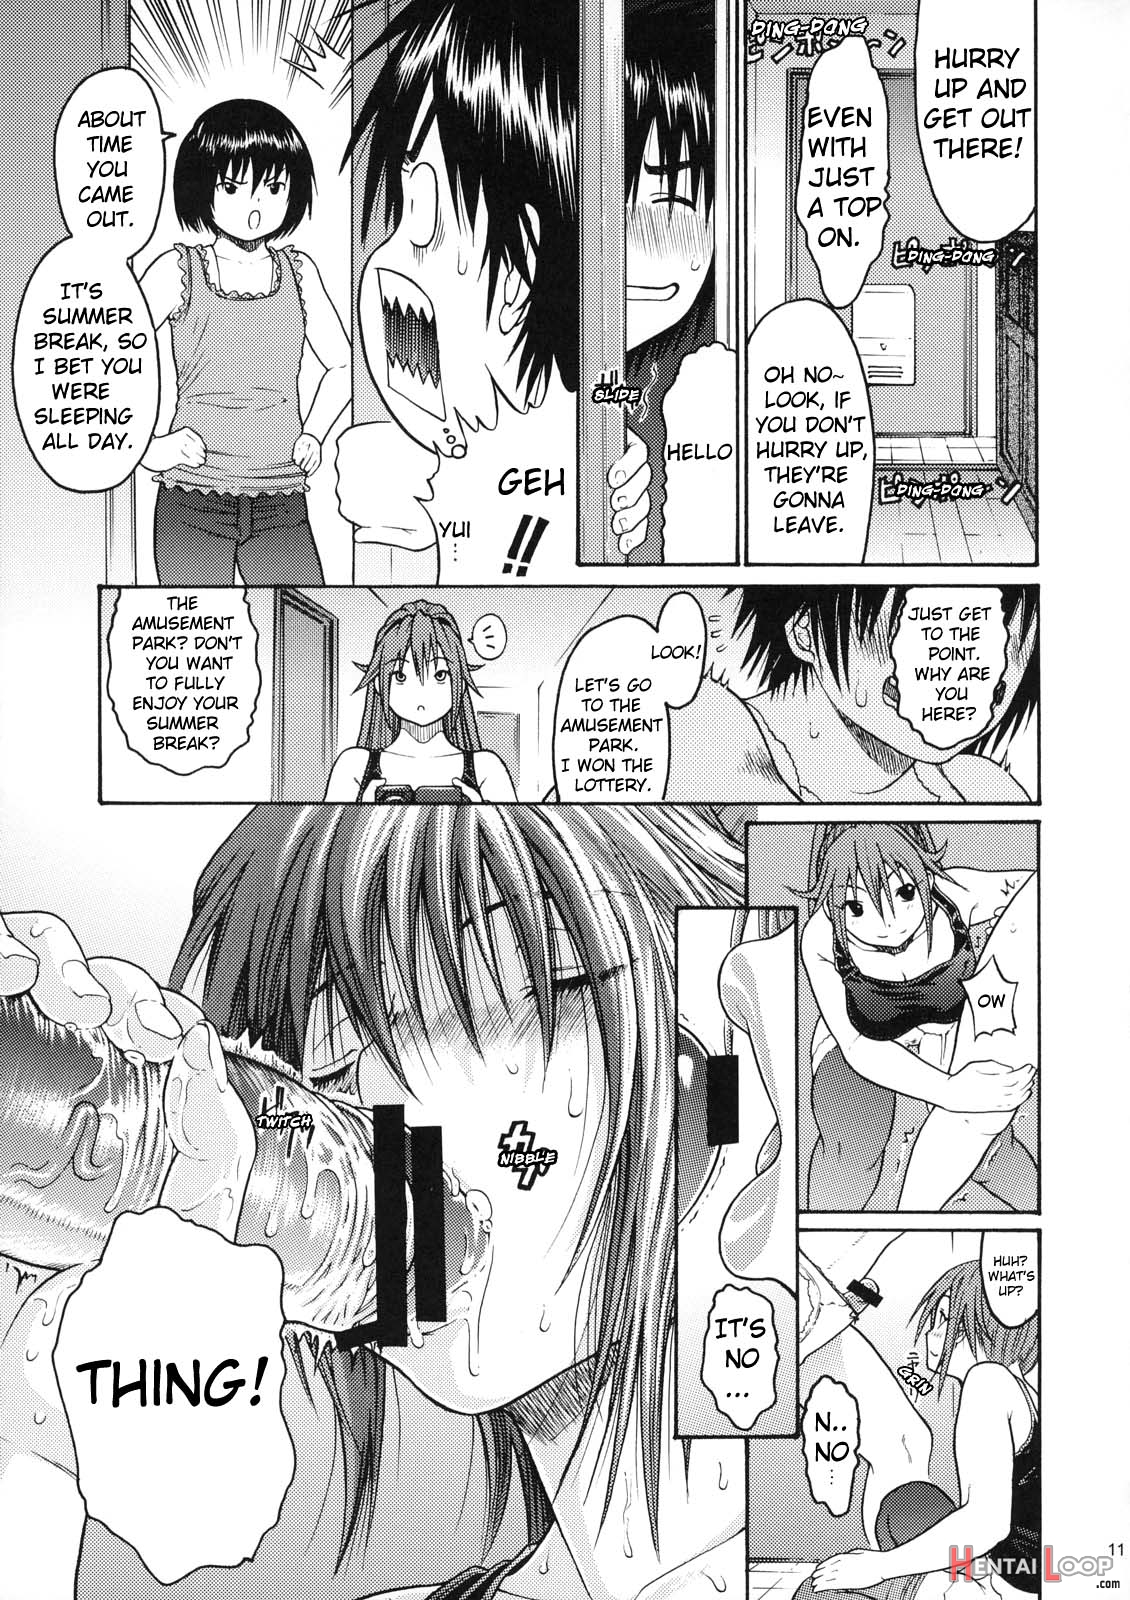 Haru Ichigo Vol. 5 page 8